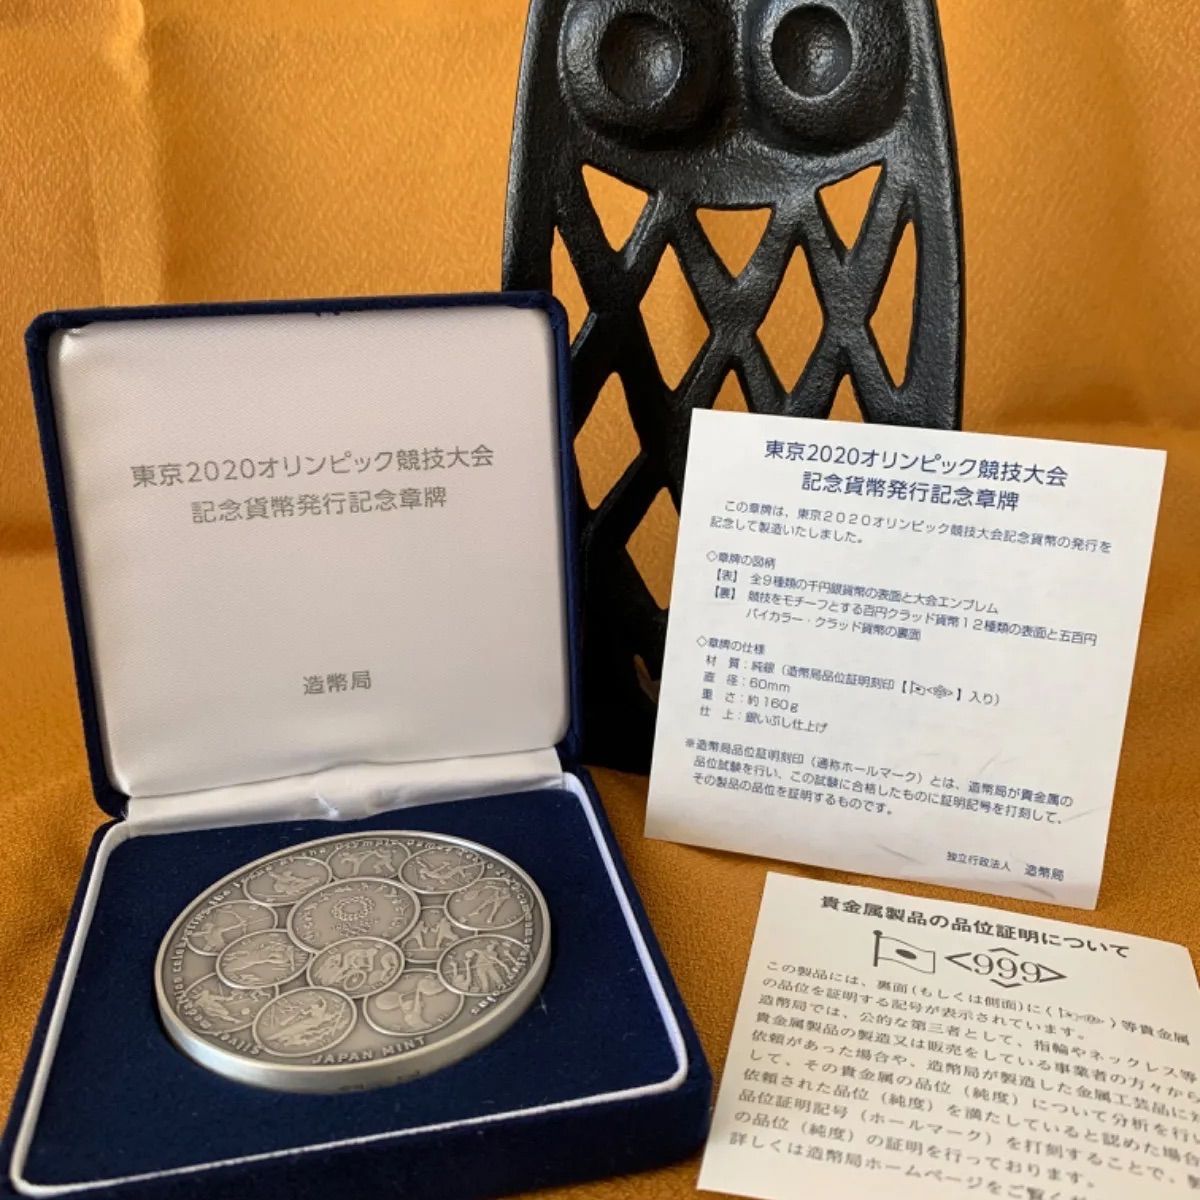 東京2020オリンピック競技大会記念硬貨発行記念章牌 - 旧貨幣/金貨 